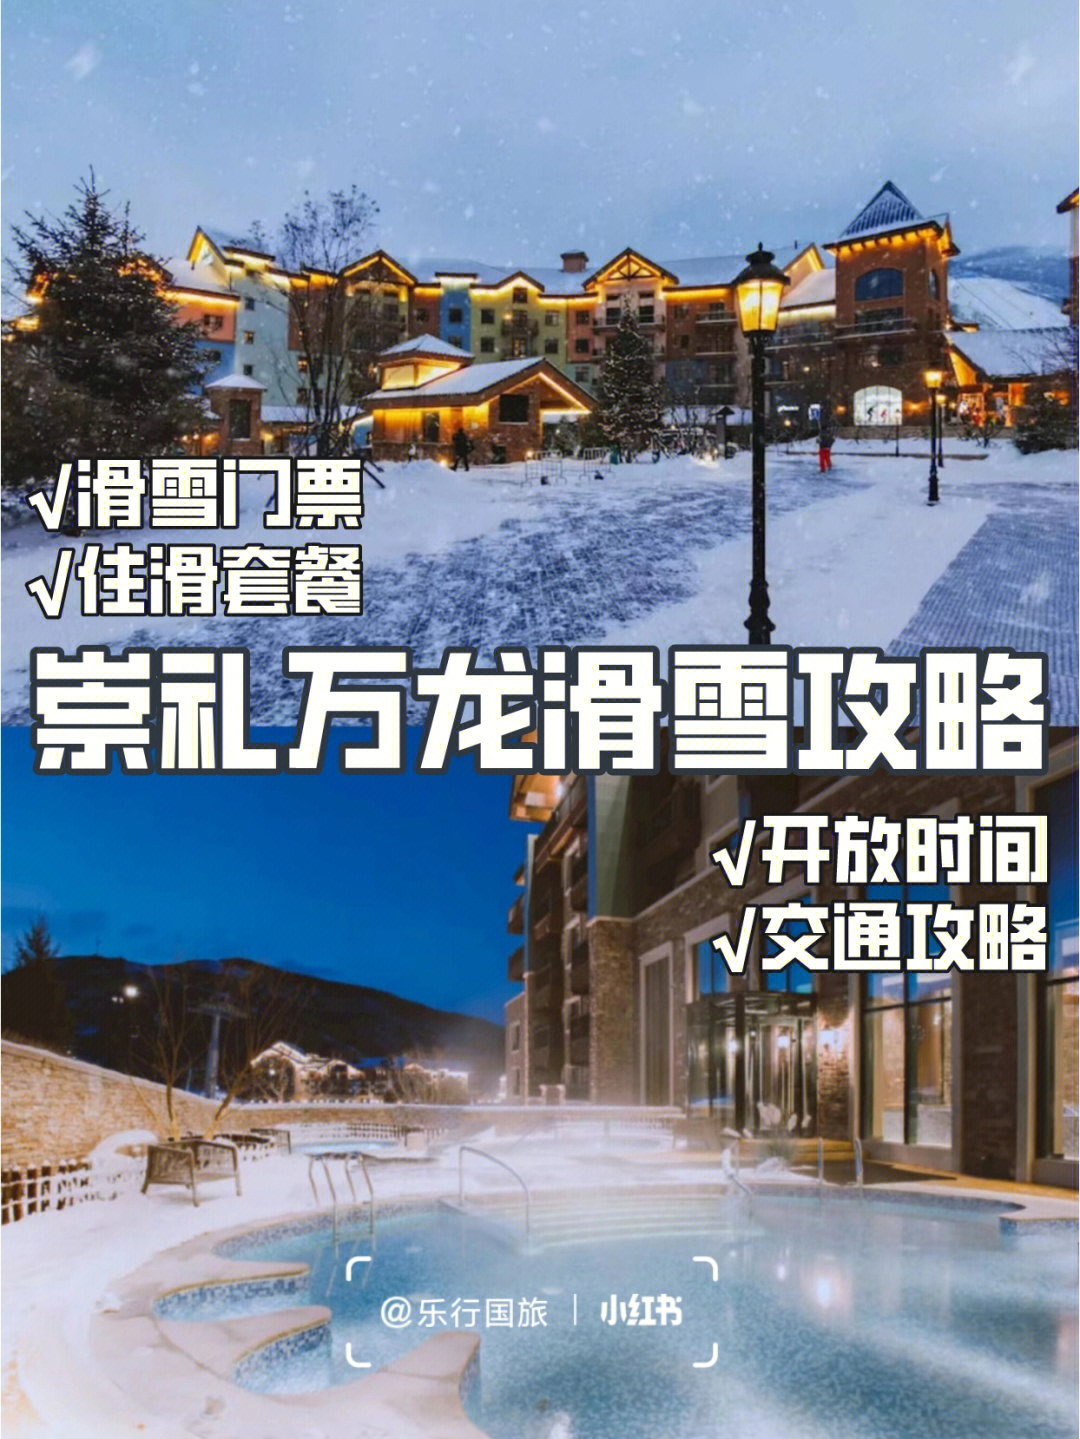 万龙滑雪场雪道介绍图片